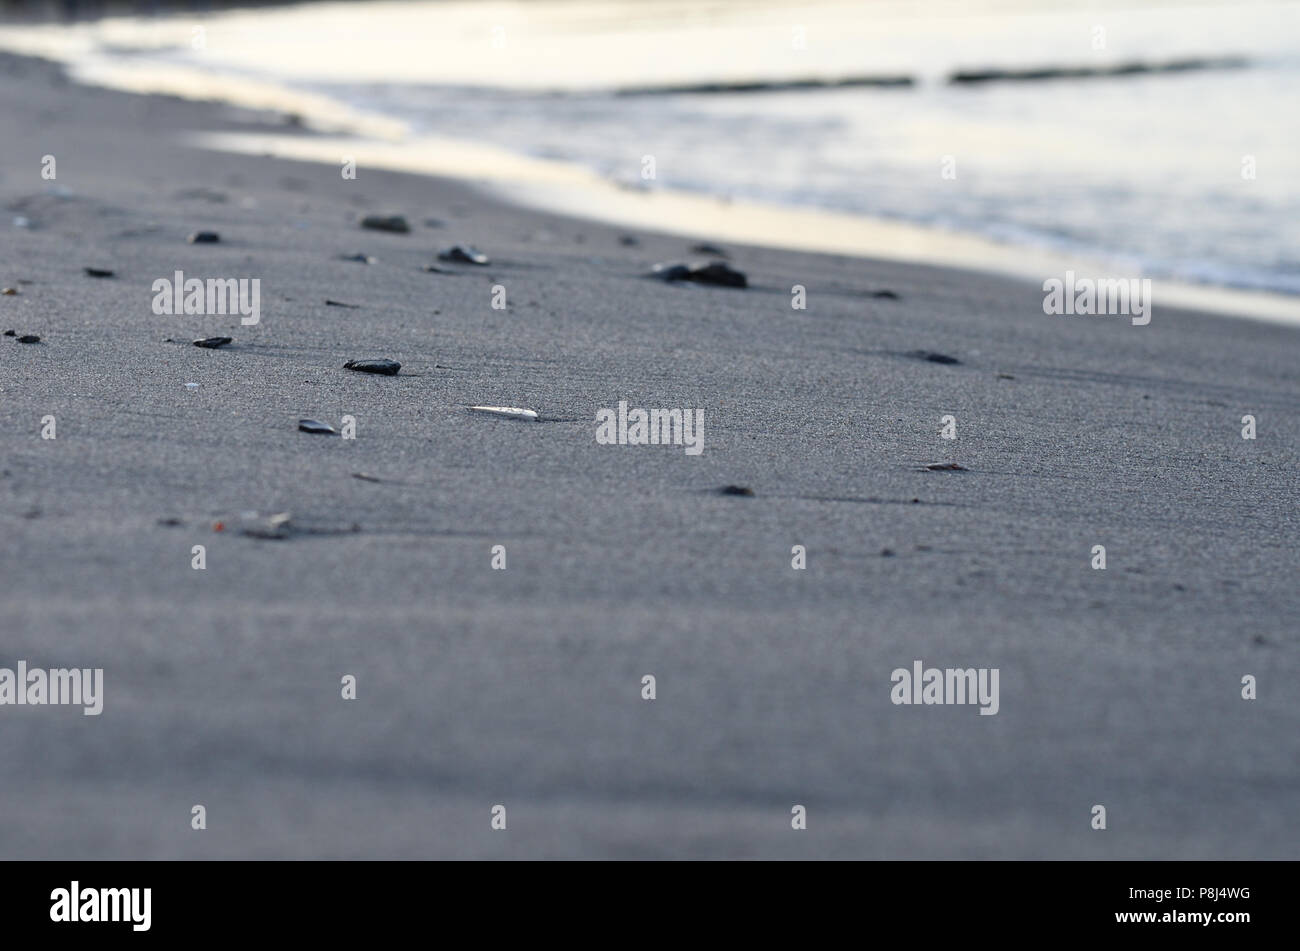 Les pierres dans le sable sur la plage, dans le jet de la mer Baltique Banque D'Images